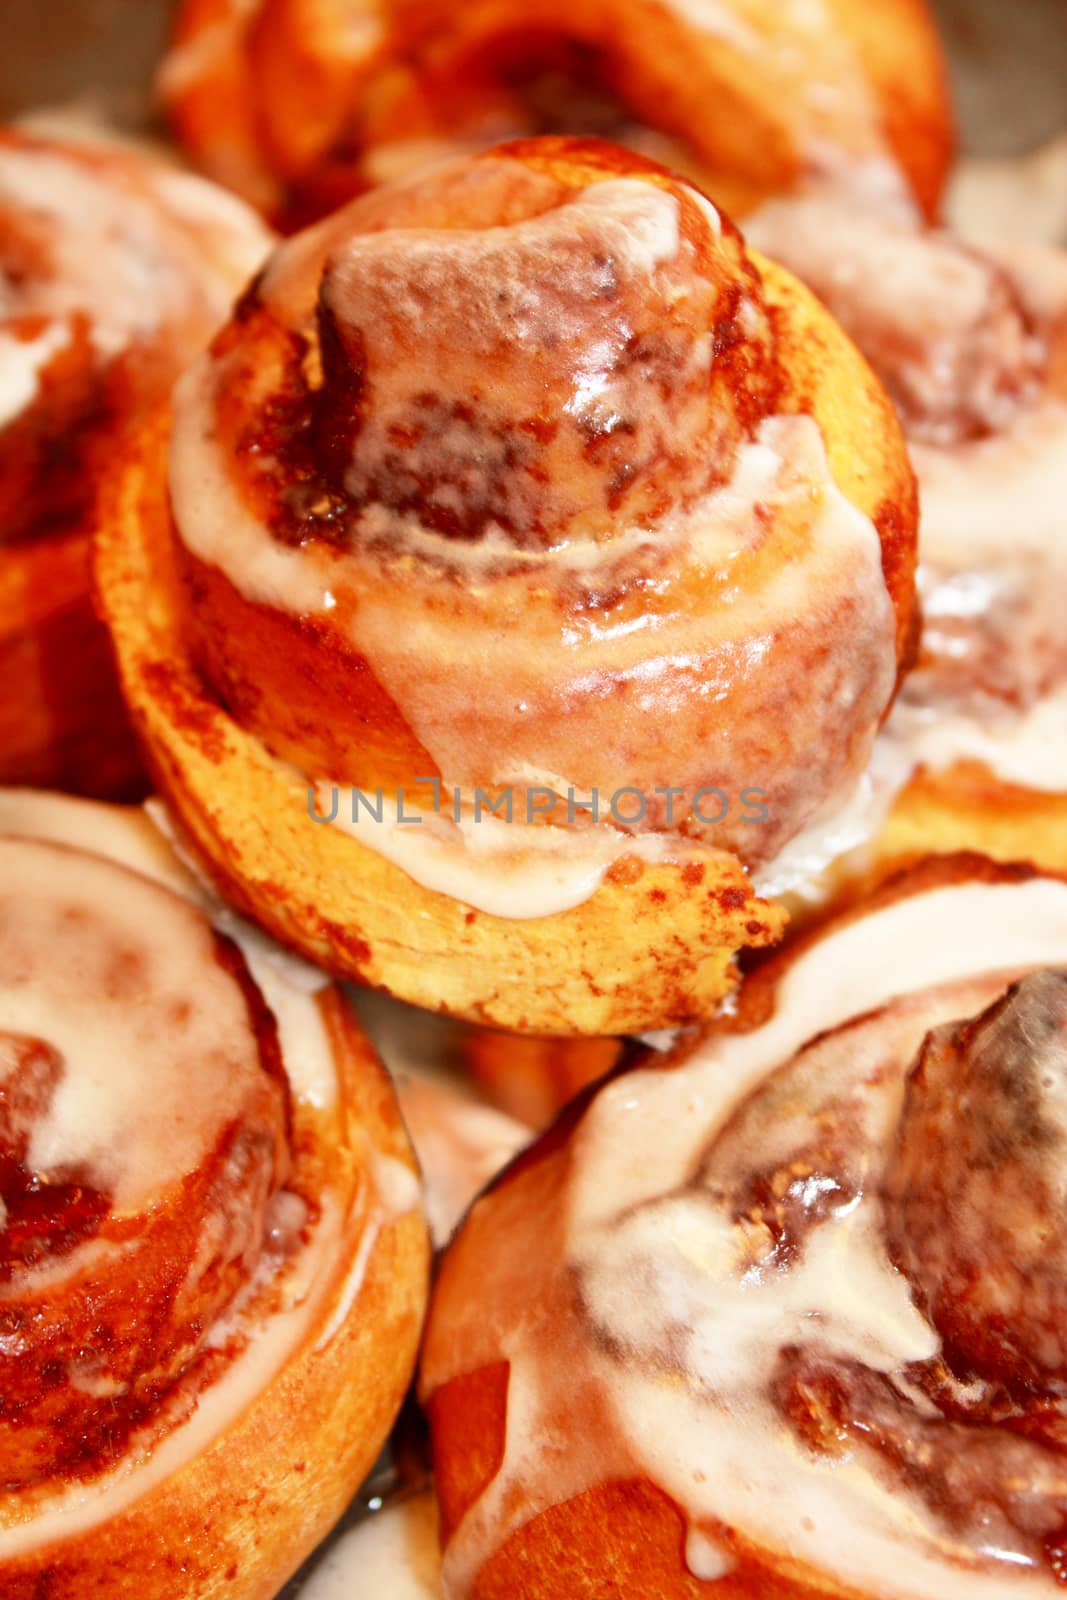 Cinnamon buns by Lessadar